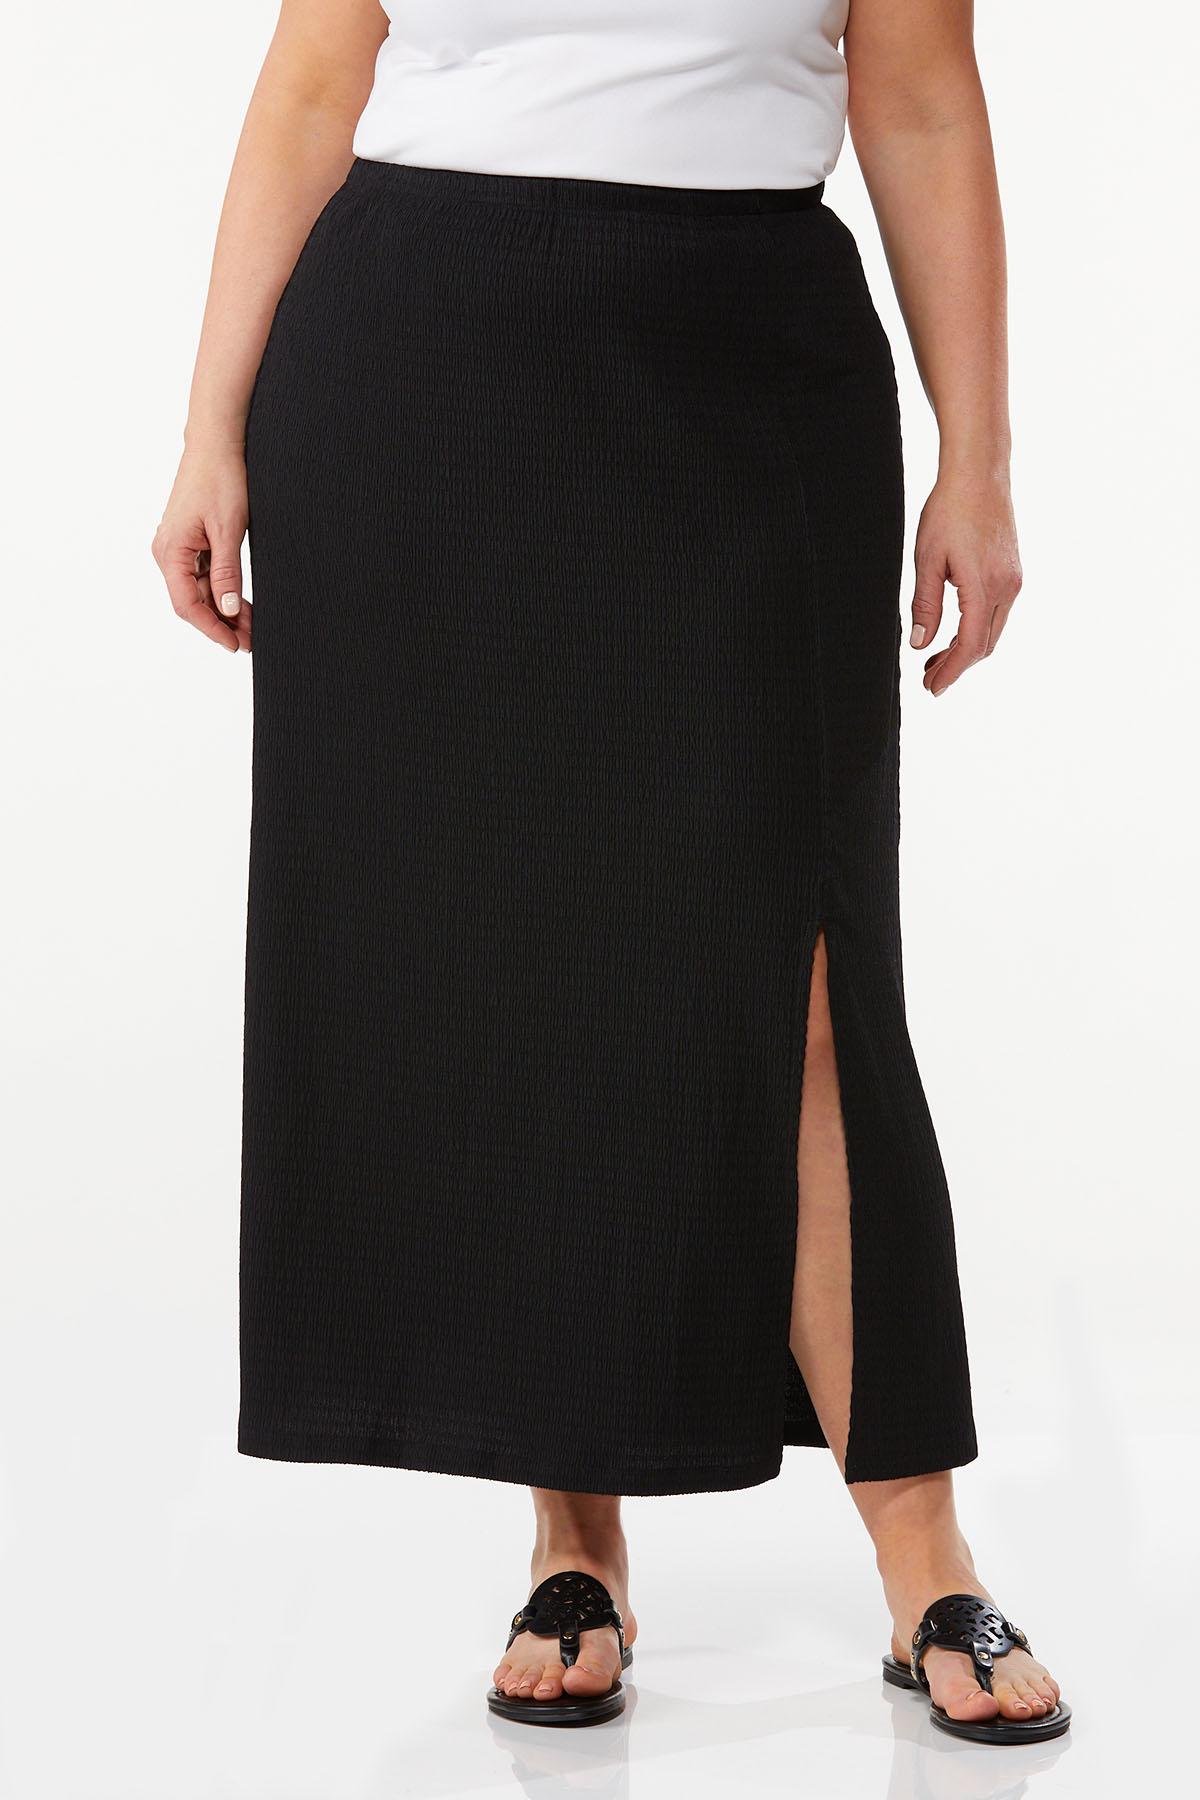 Plus Size Textured Maxi Skirt